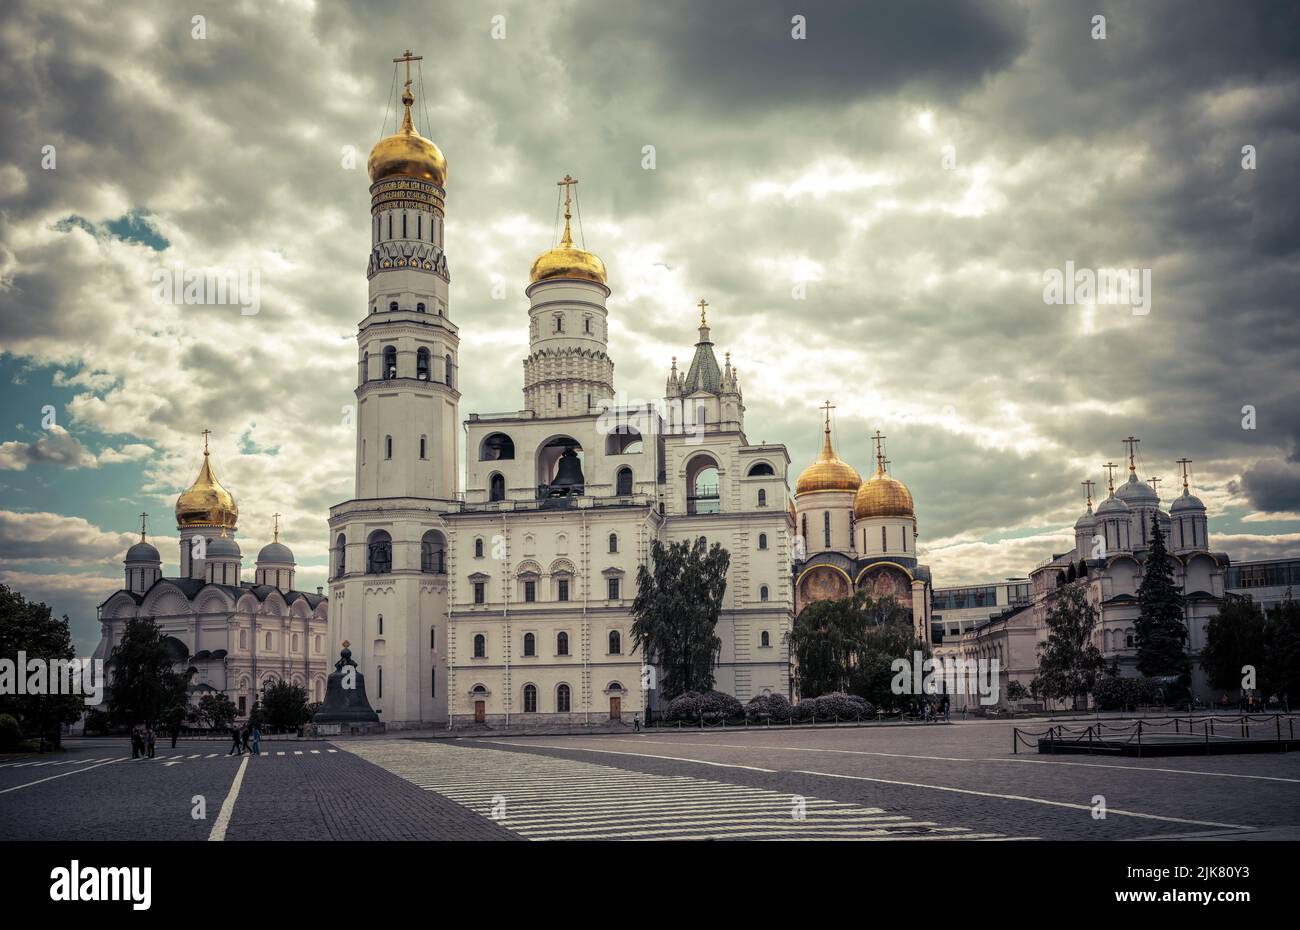 Catedrales e iglesias rusas en el Kremlin de Moscú, Rusia. Paisaje de los antiguos templos ortodoxos de Moscú, vista espectacular de los monumentos históricos de Moscú Foto de stock